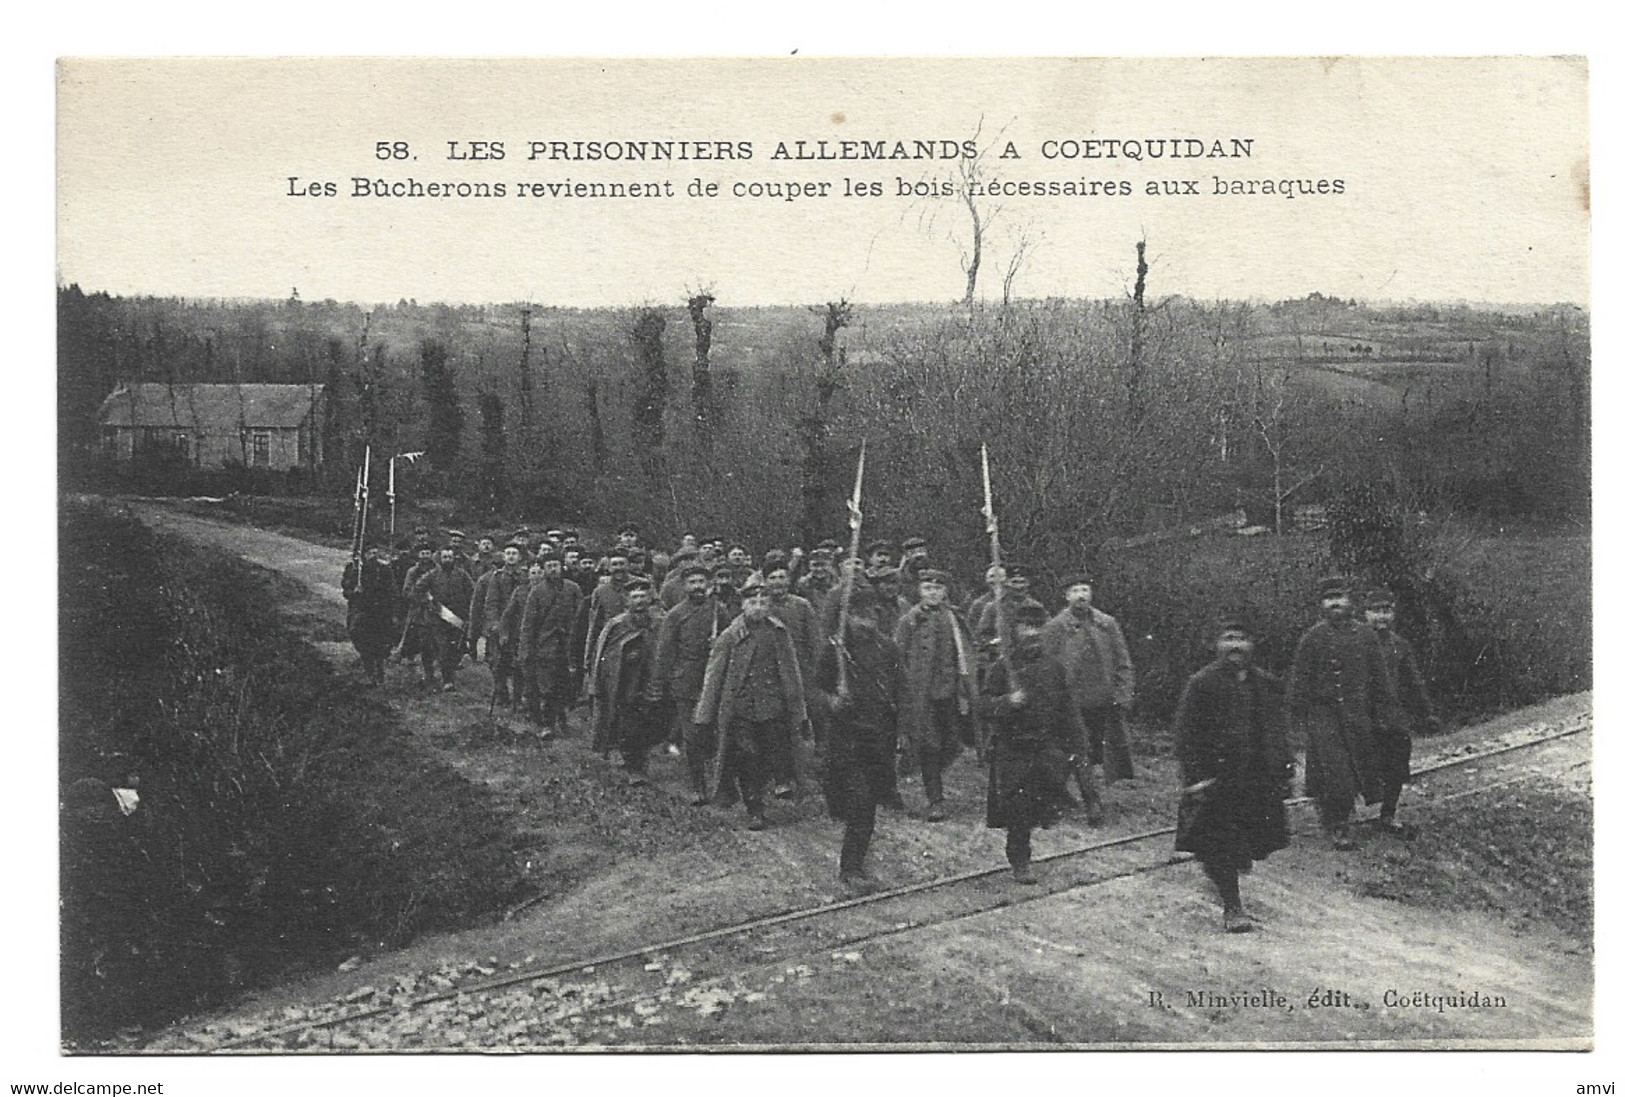 (4603)  CAMP DE COETQUIDAN PRISONNIERS ALLEMANDS LES BUCHERONS FOSSIER Rodolphe Evergnicourt - Guer Cötquidan